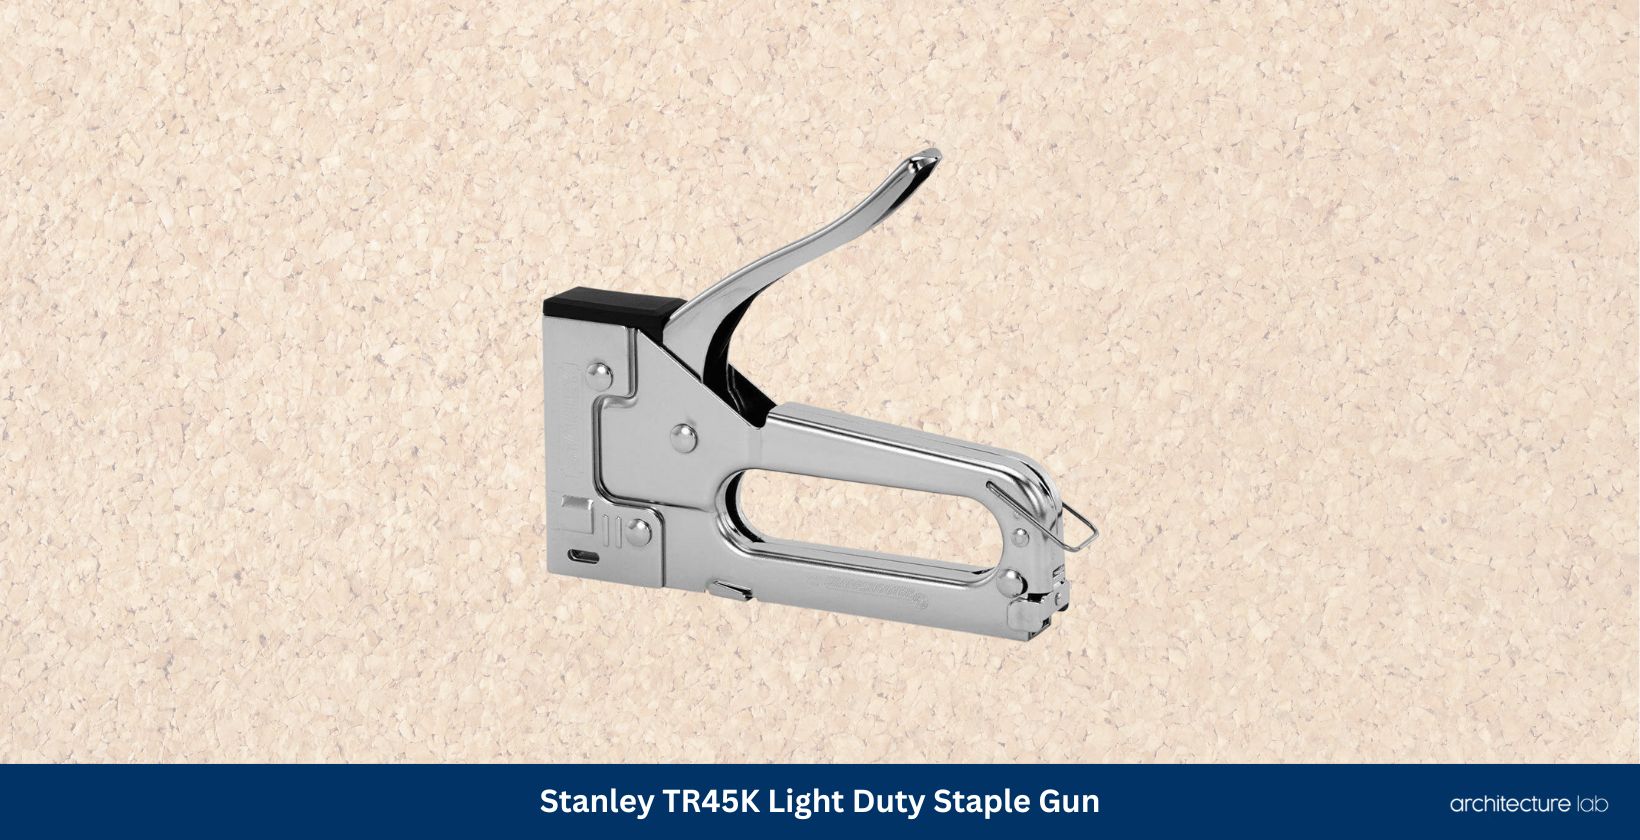 Stanley tr45k light duty staple gun